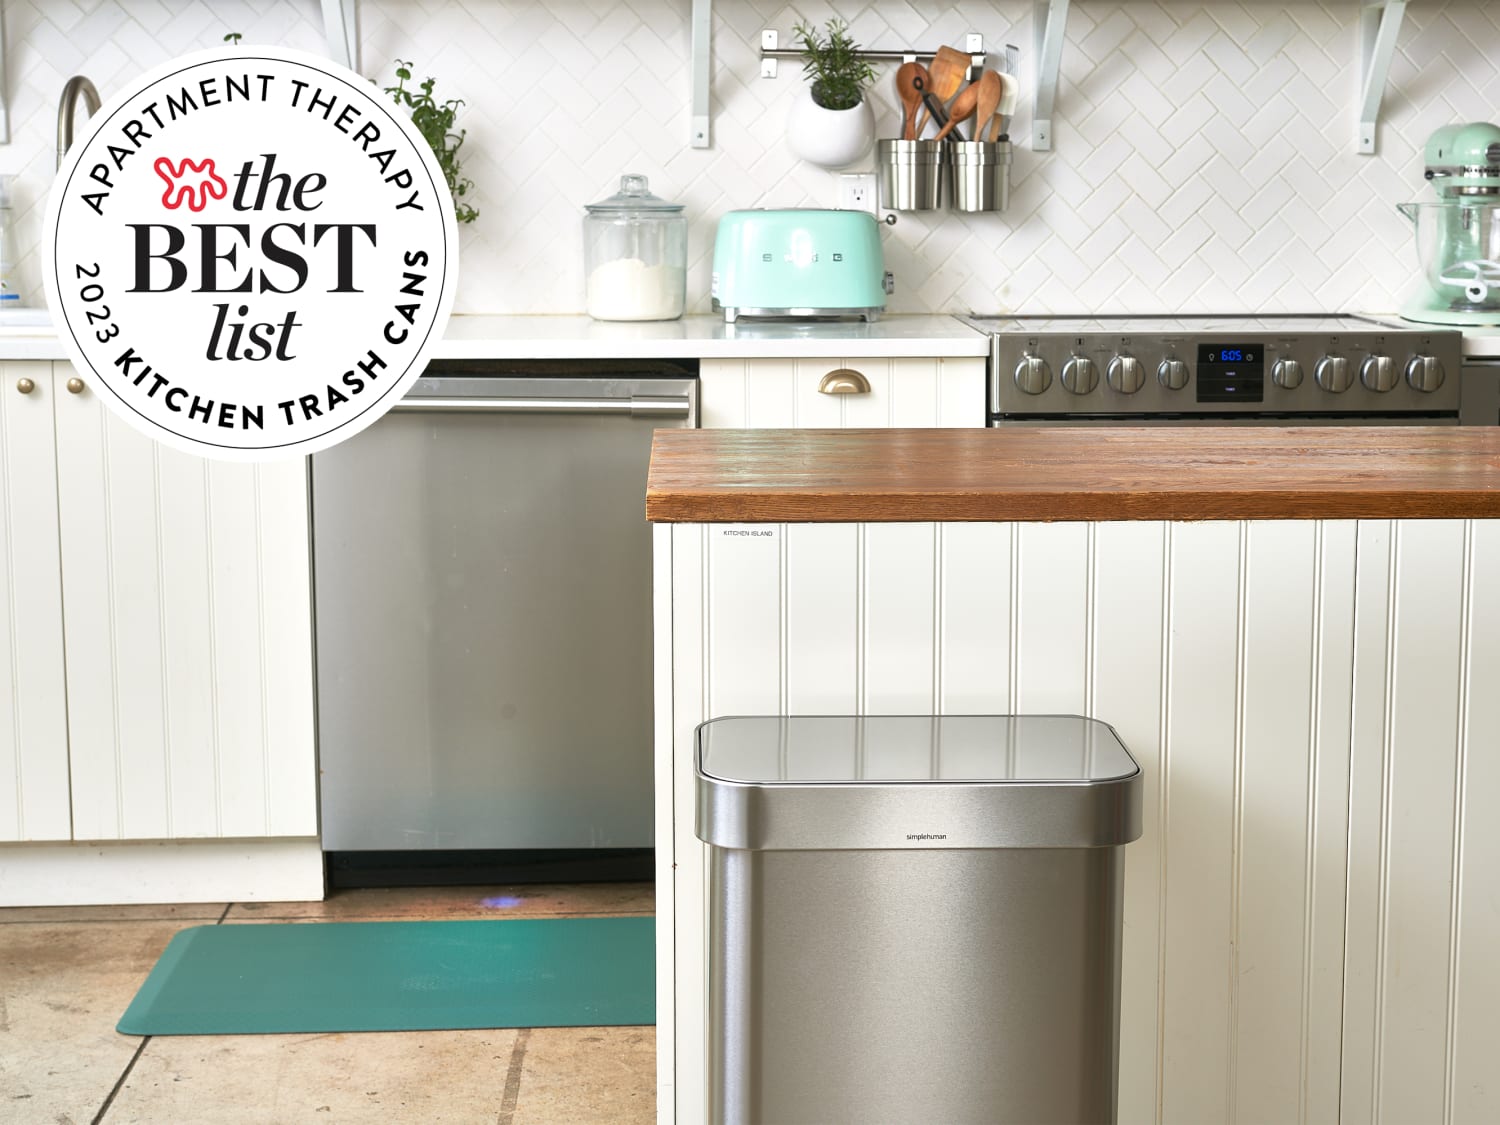 The 11 Best Kitchen Trash Cans Under $150